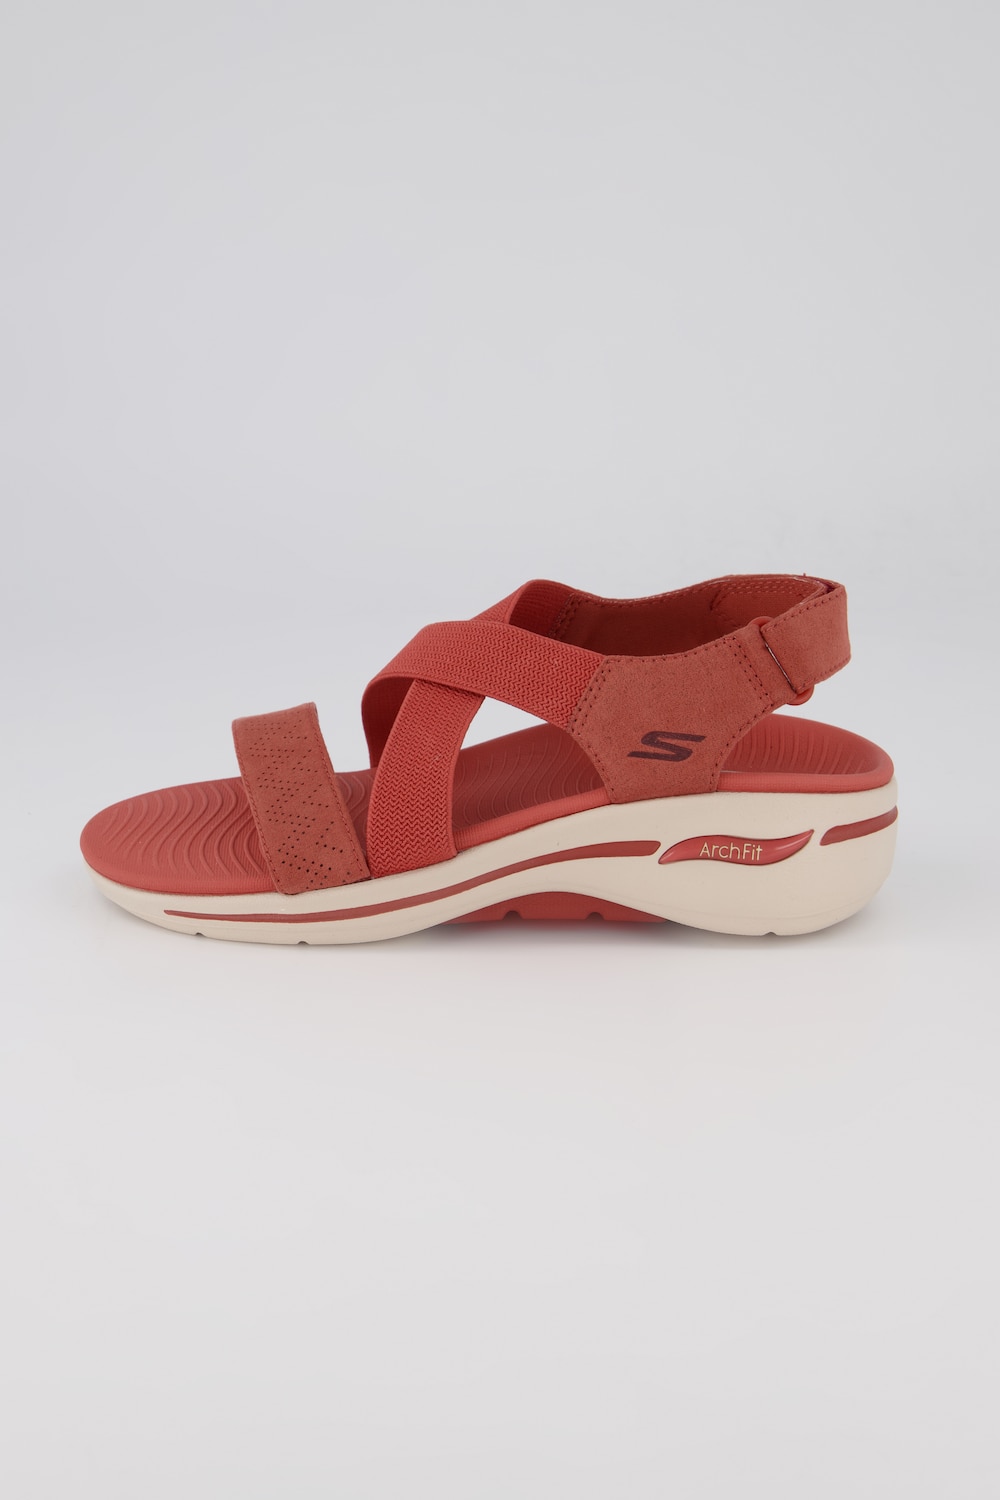 Grote Maten Skechers sandalen, Dames, rood, Maat: 39, Polyester, Ulla Popken